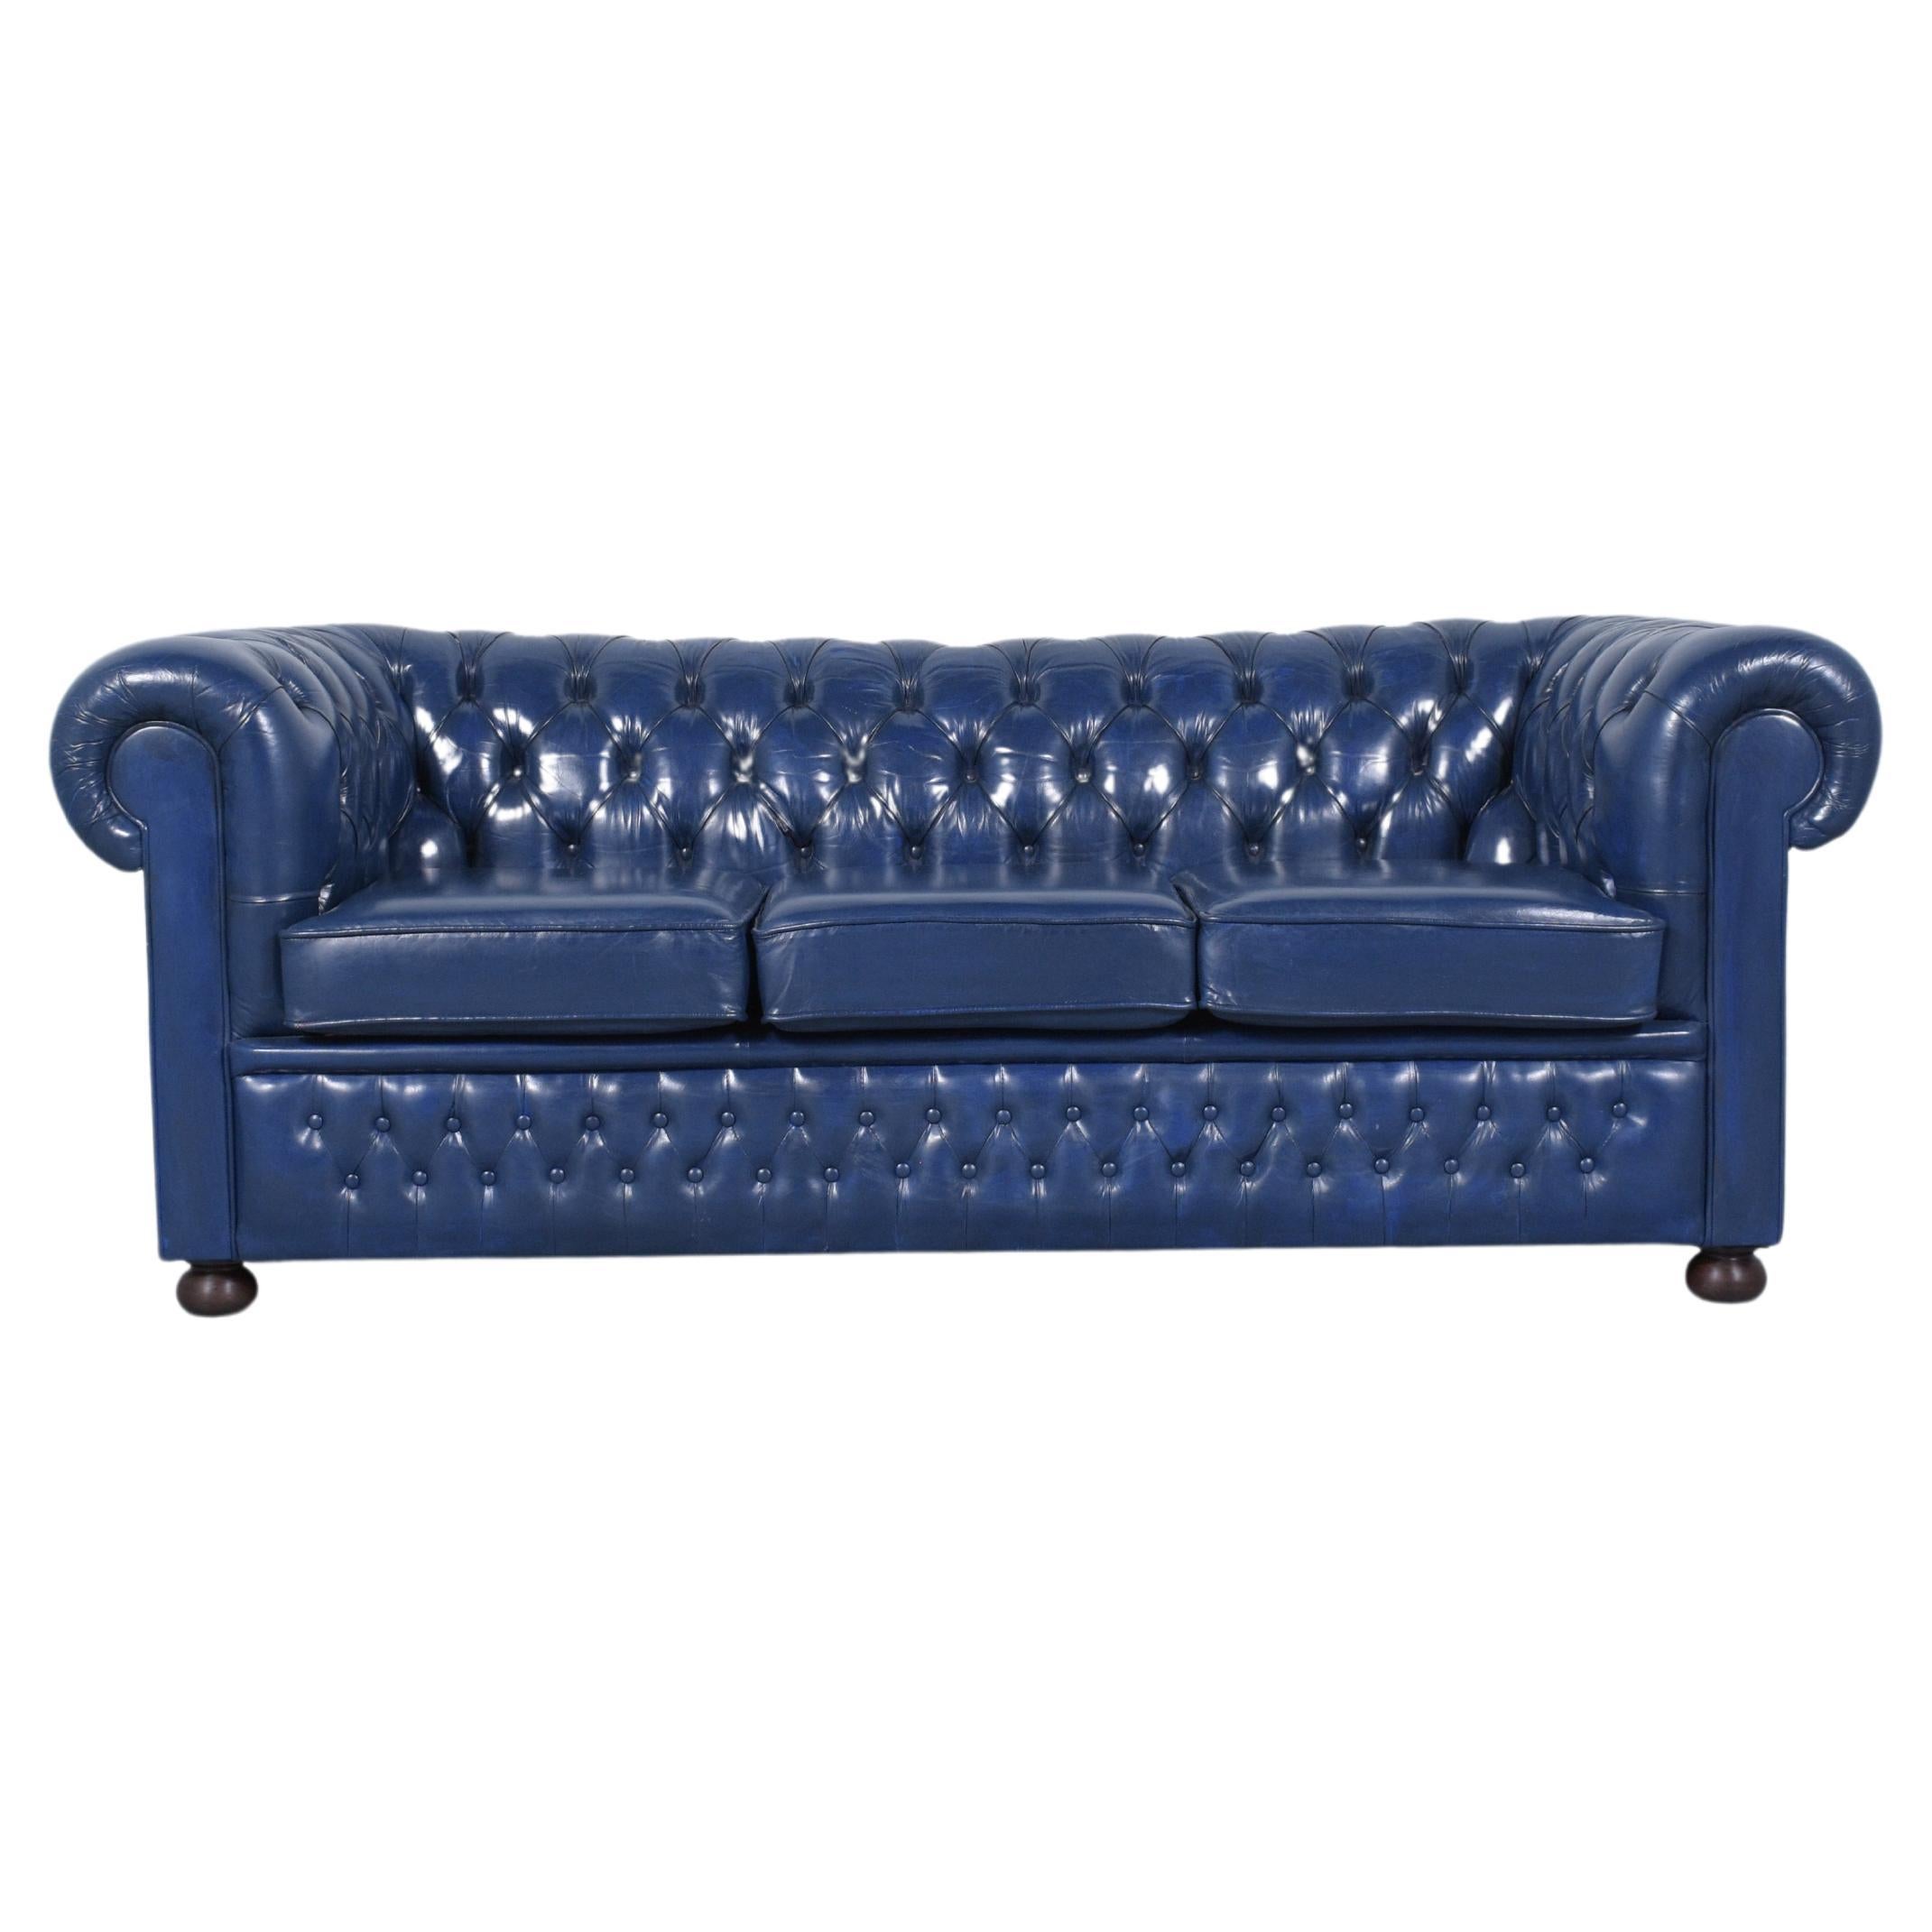 Lassen Sie sich von der zeitlosen Eleganz unseres restaurierten Chesterfield-Sofas im Vintage-Stil verzaubern, einer klassischen Verkörperung von Komfort und Raffinesse. Dieses in den 1970er Jahren gefertigte und von unseren erfahrenen Handwerkern